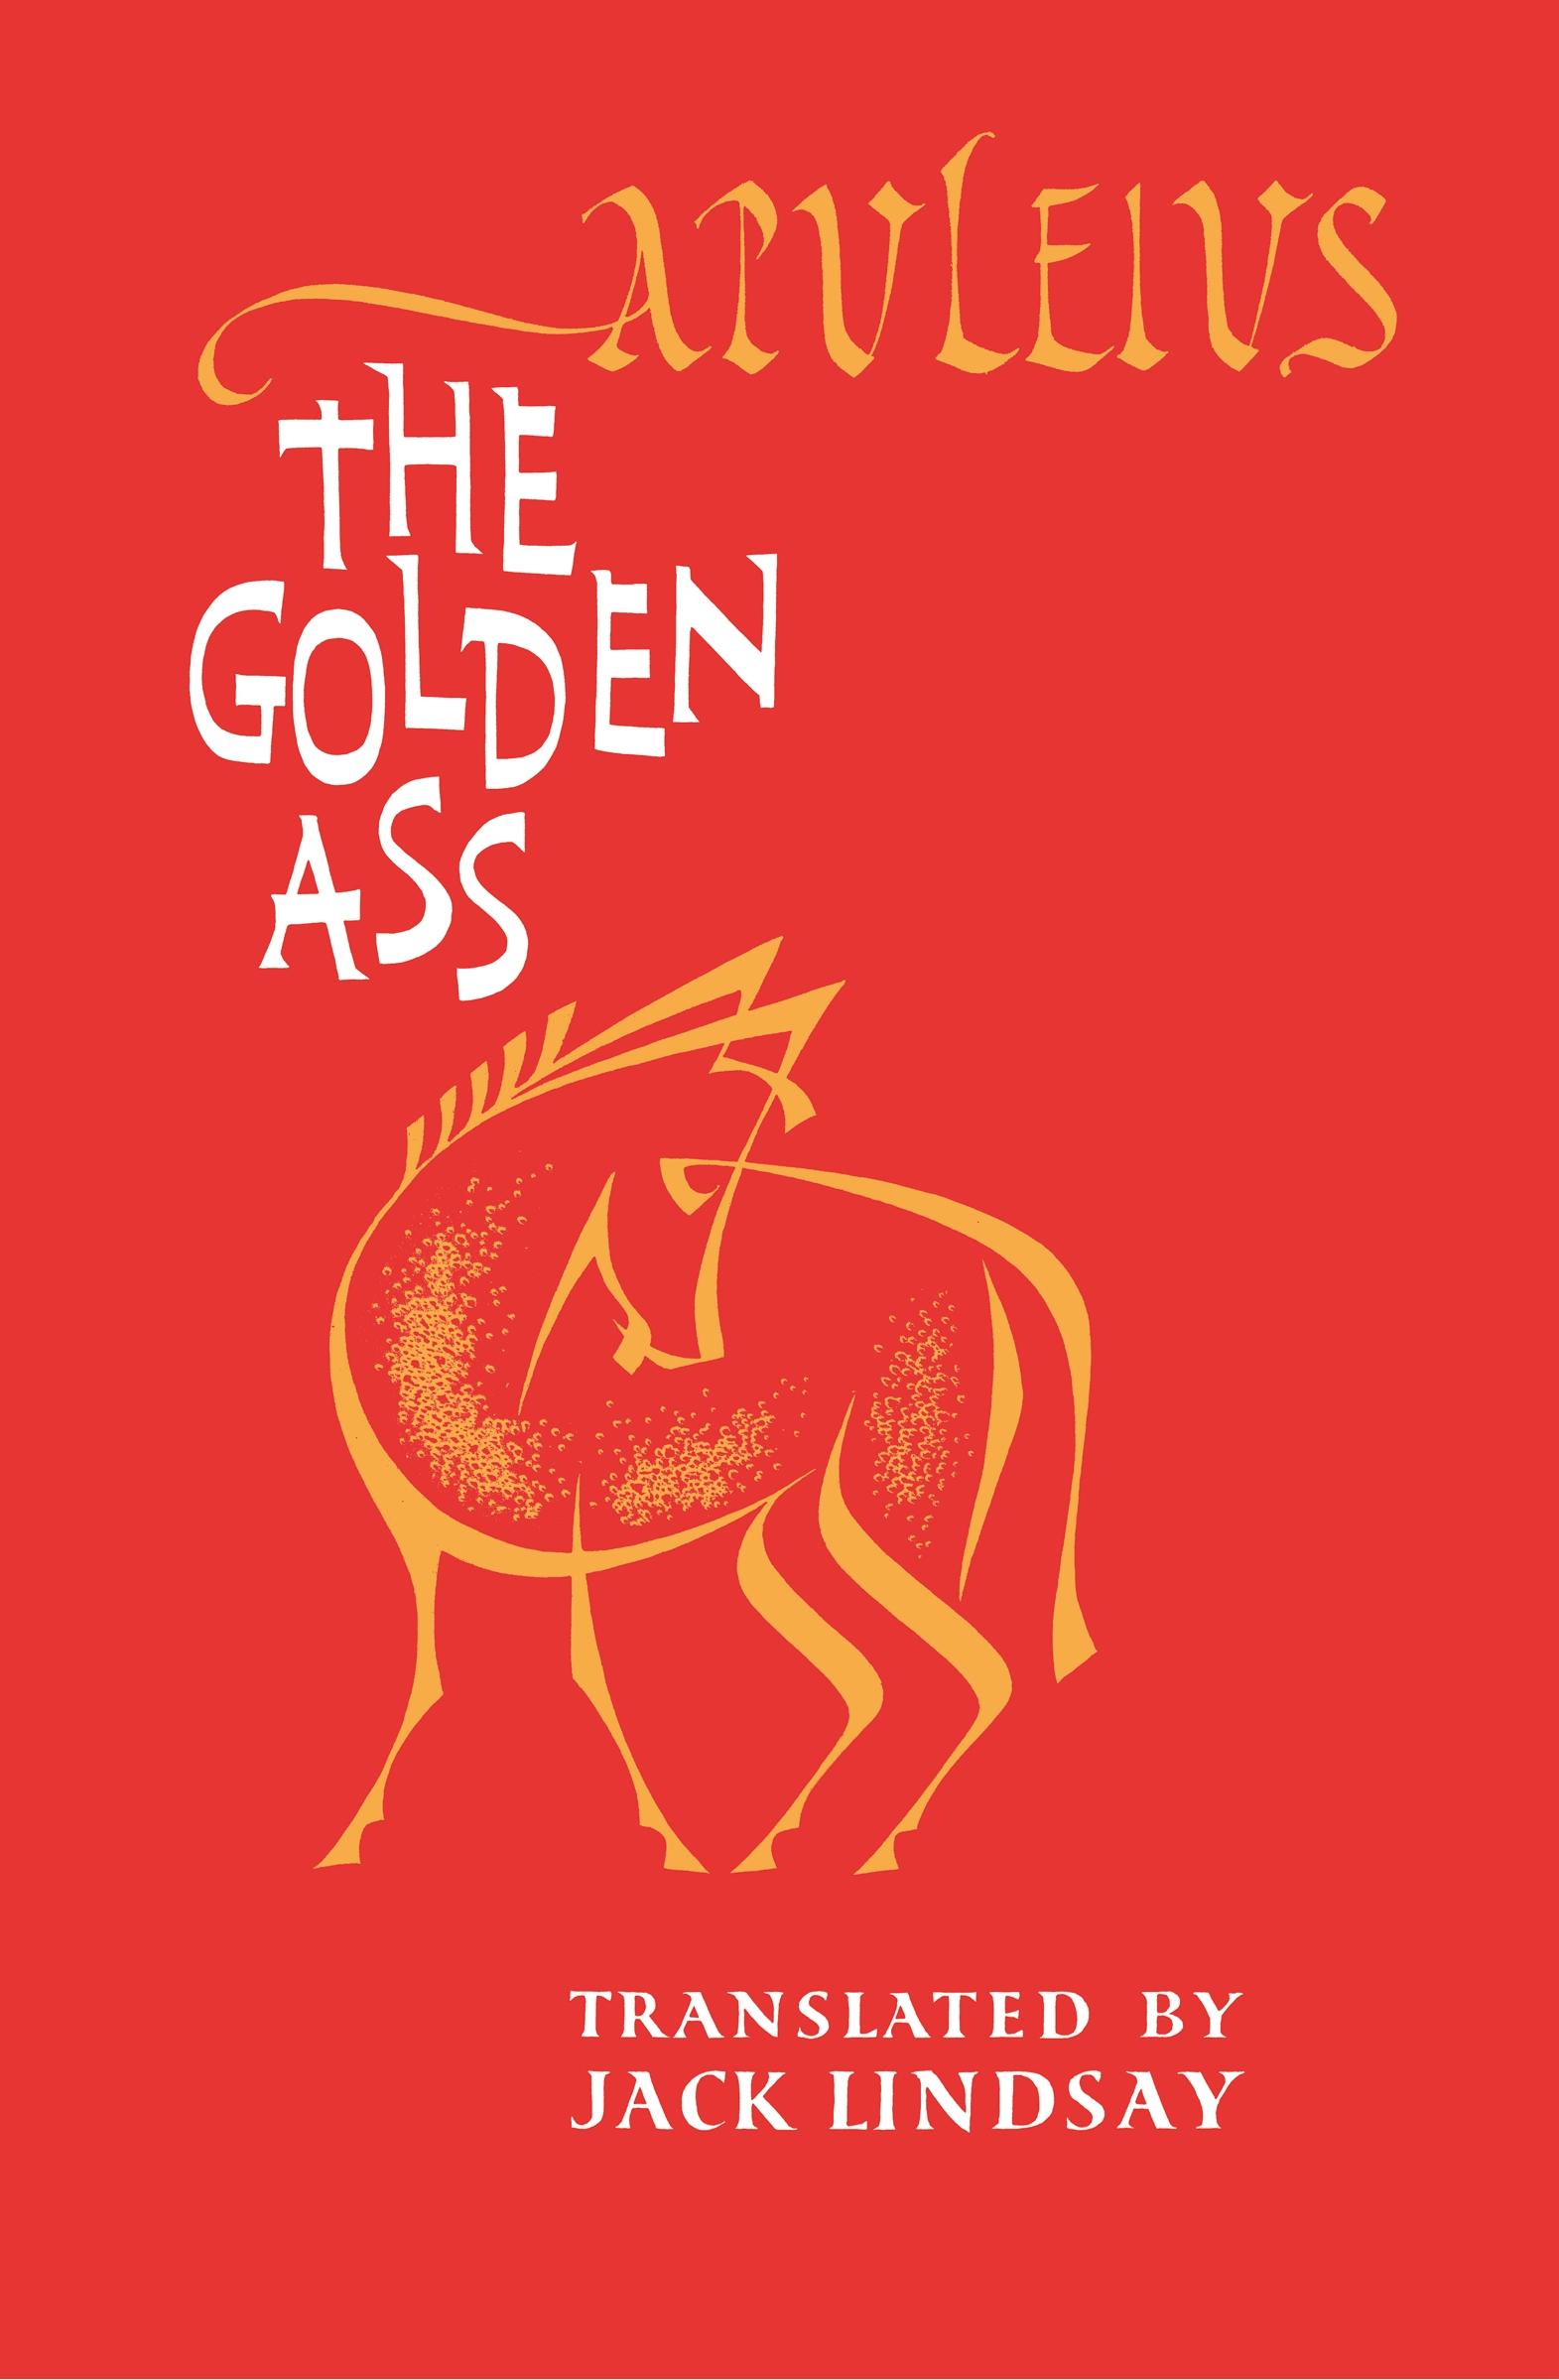 The Golden Ass - Apuleius, Lucius Apuleius